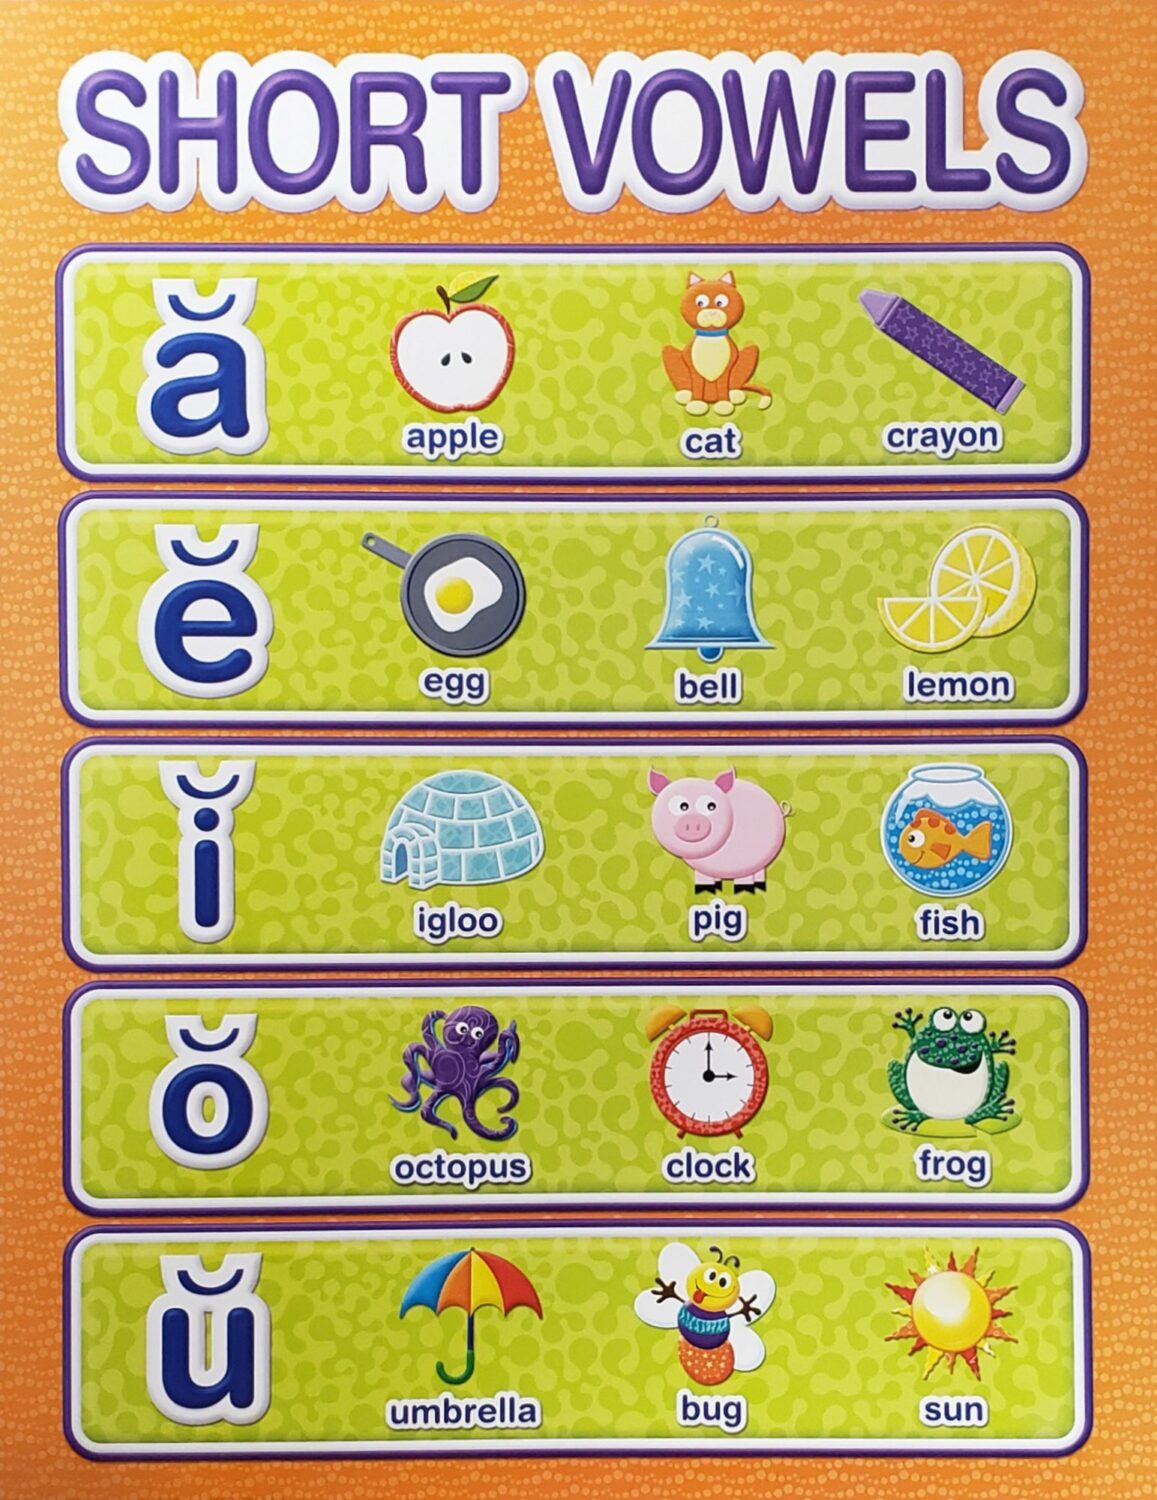 Short Vowels Poster - Home Messenger